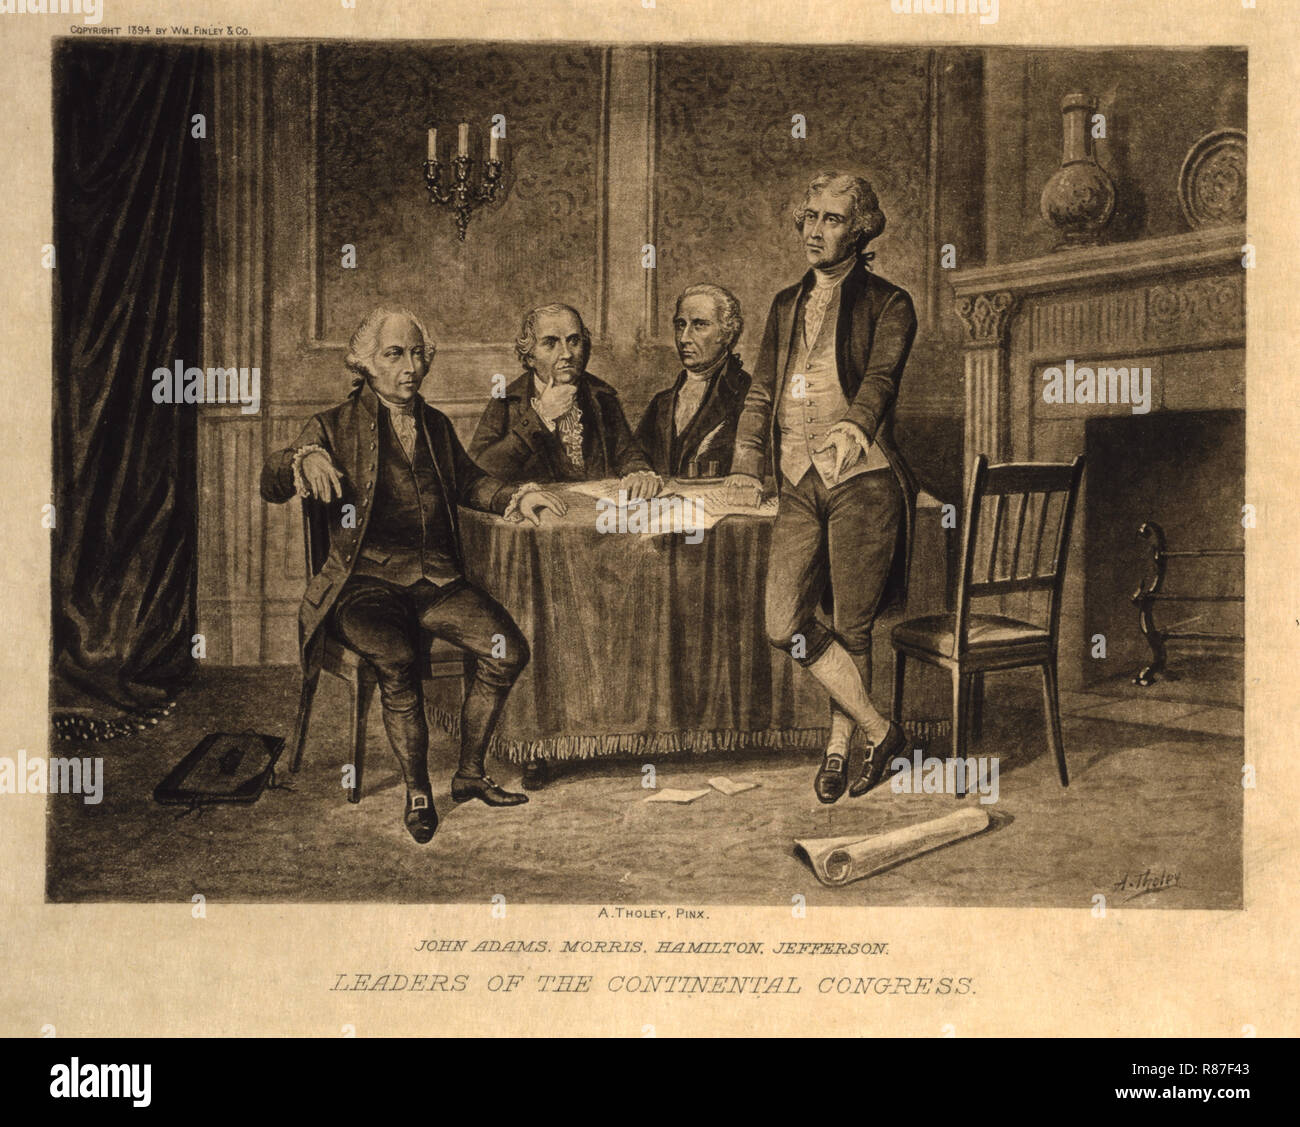 John Adams, Morris, Hamilton, Jefferson, les leaders du Congrès continental, Augustus Tholey, 1896 Banque D'Images